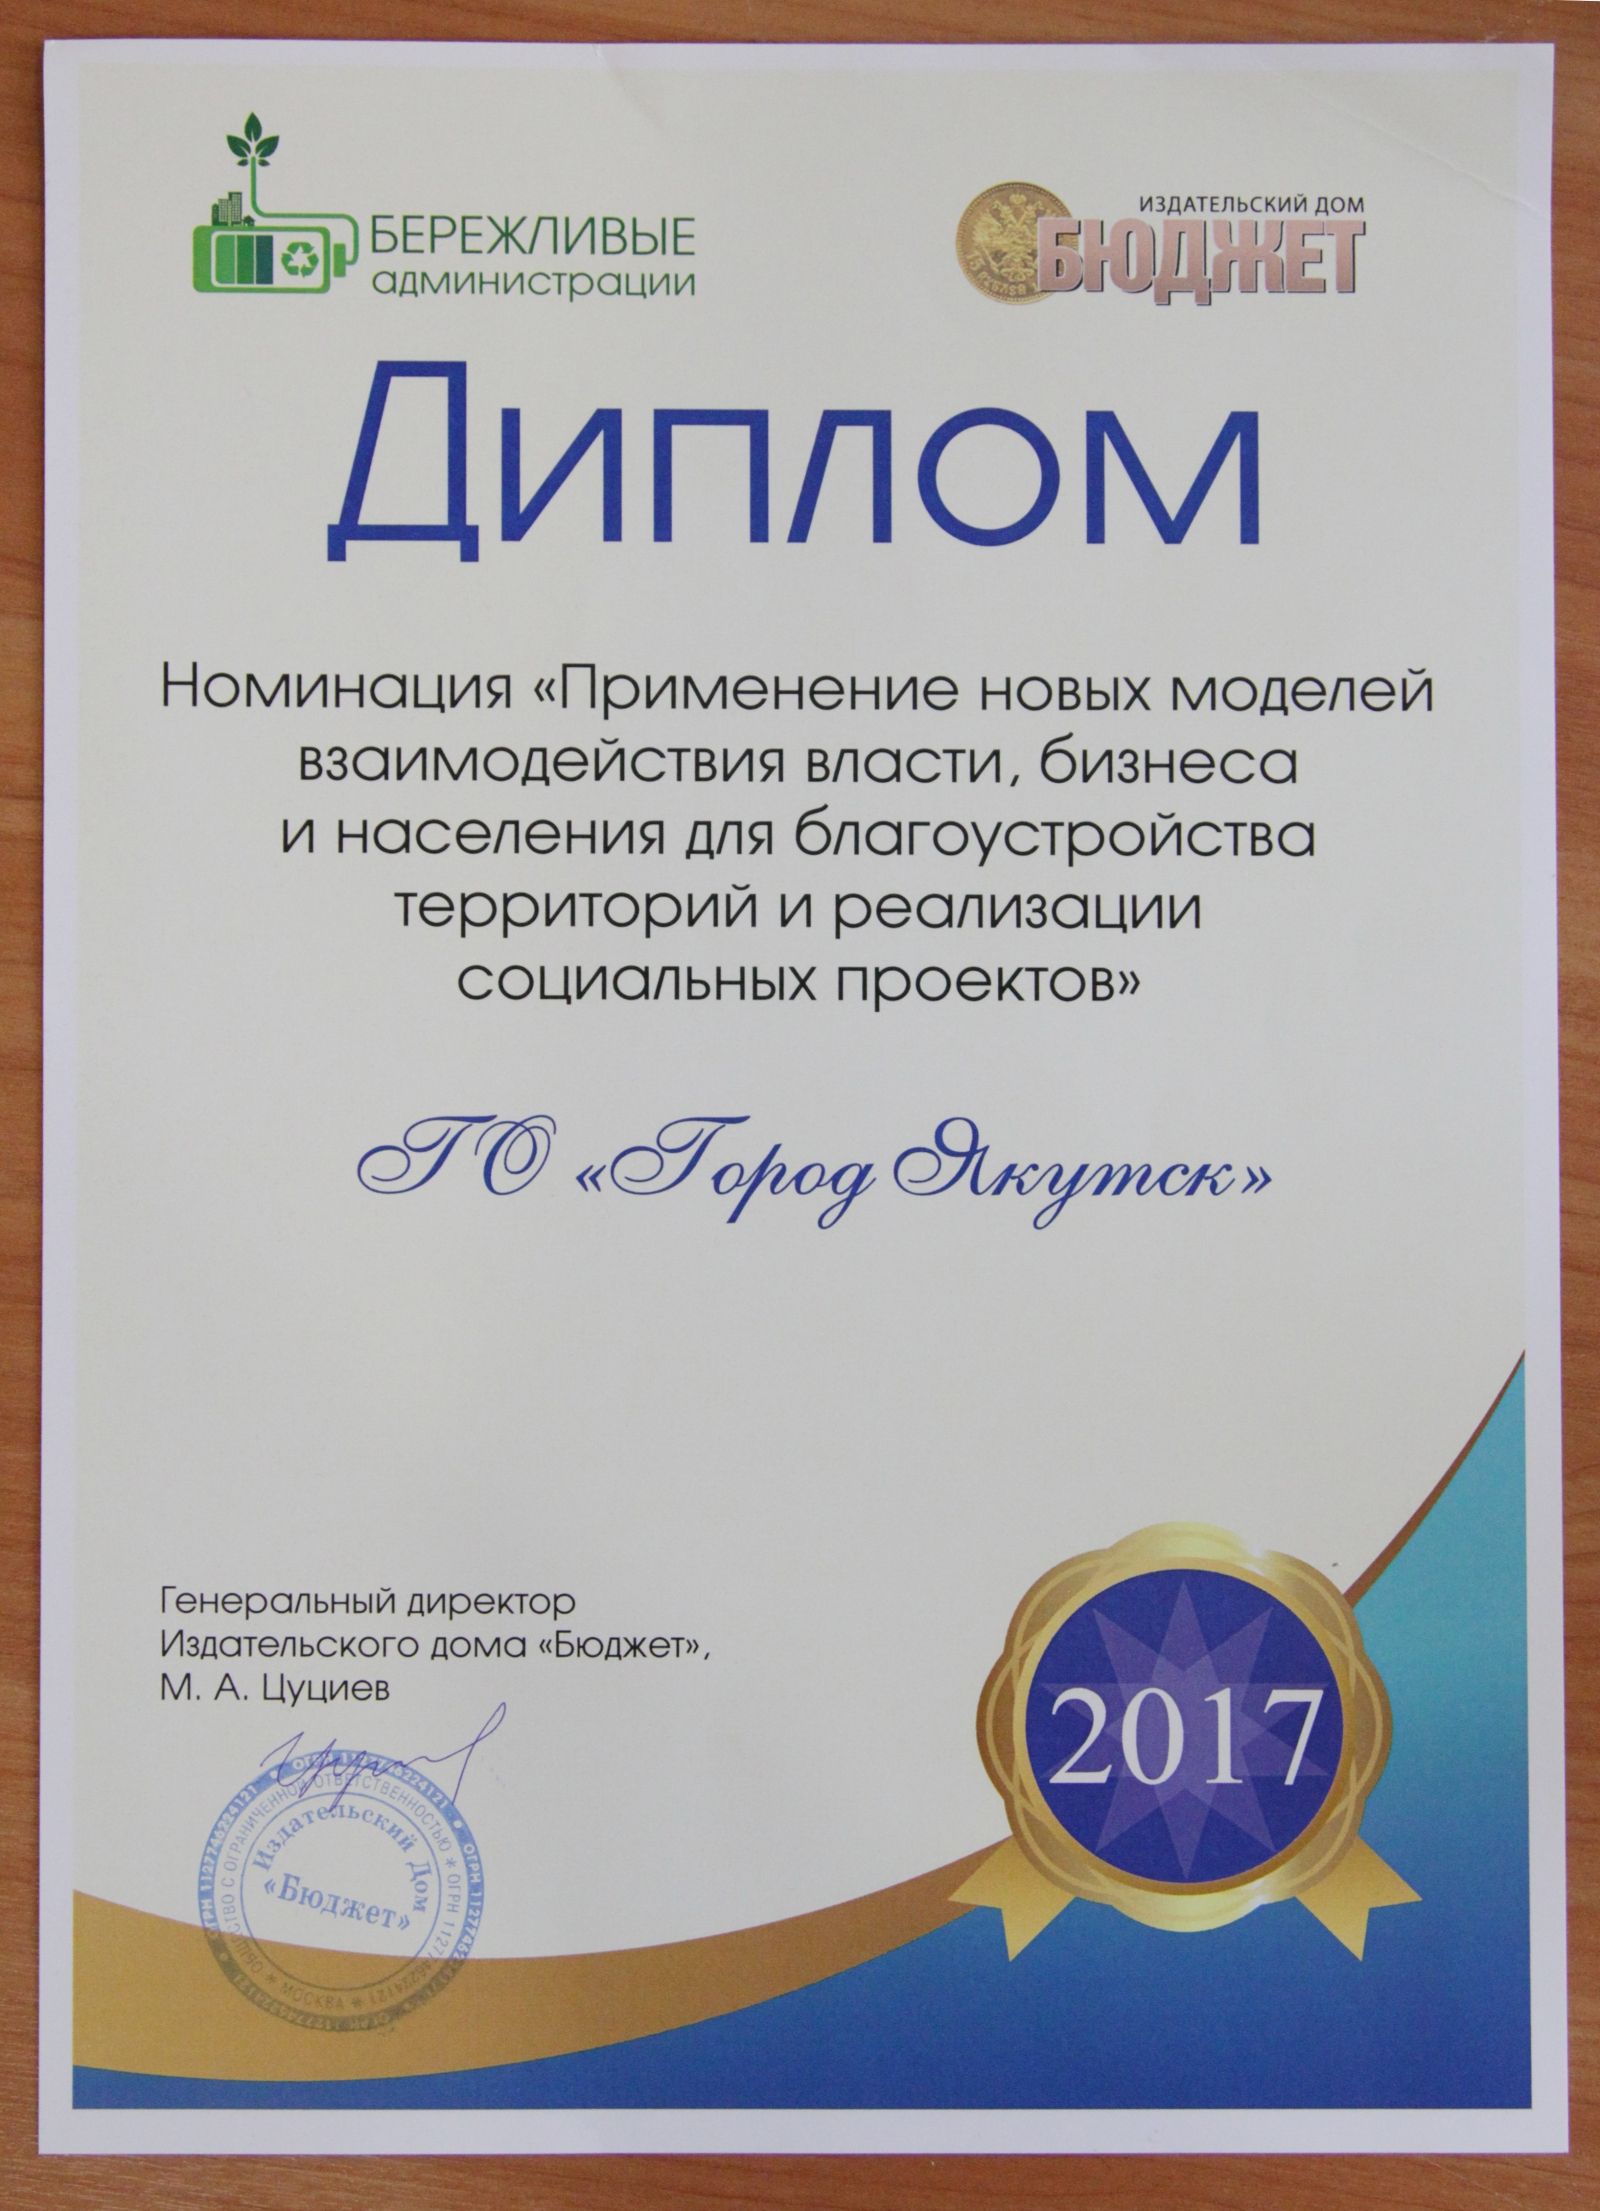 Якутск стал дипломантом конкурса «Бережливые администрации»